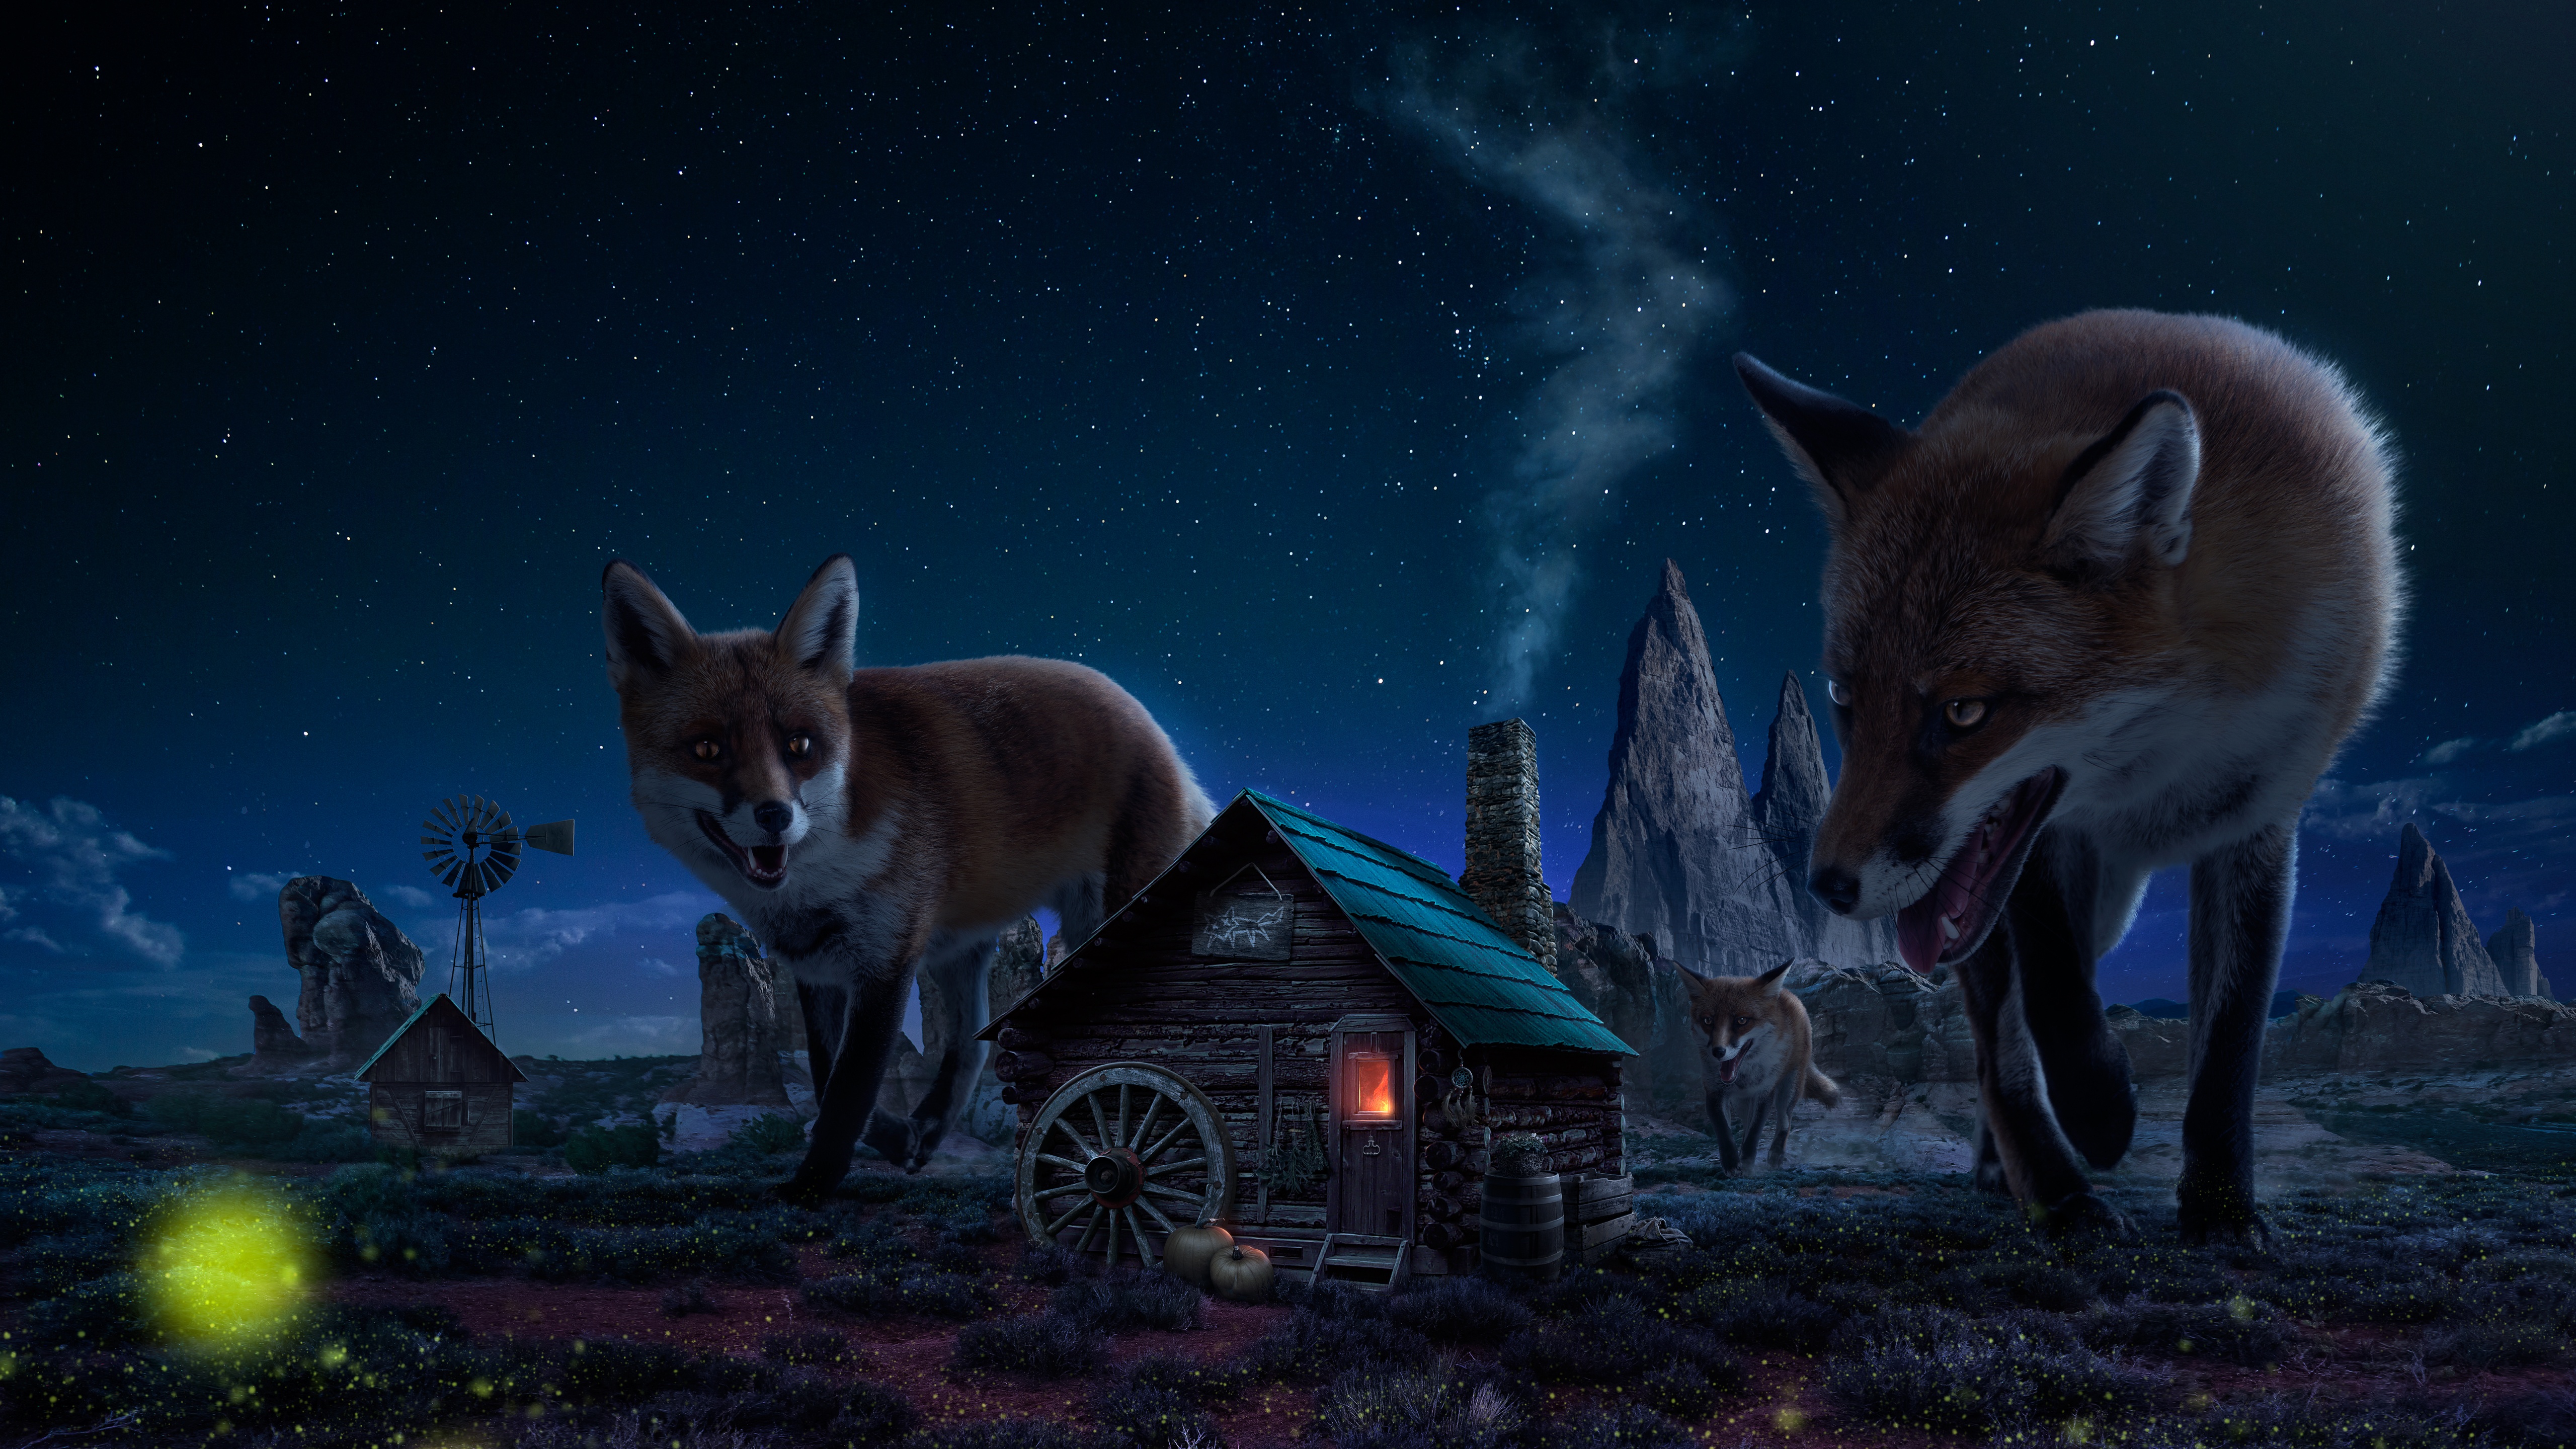 Witch House Wallpaper 4K, Fox, Wild animals, Fantasy, #3840